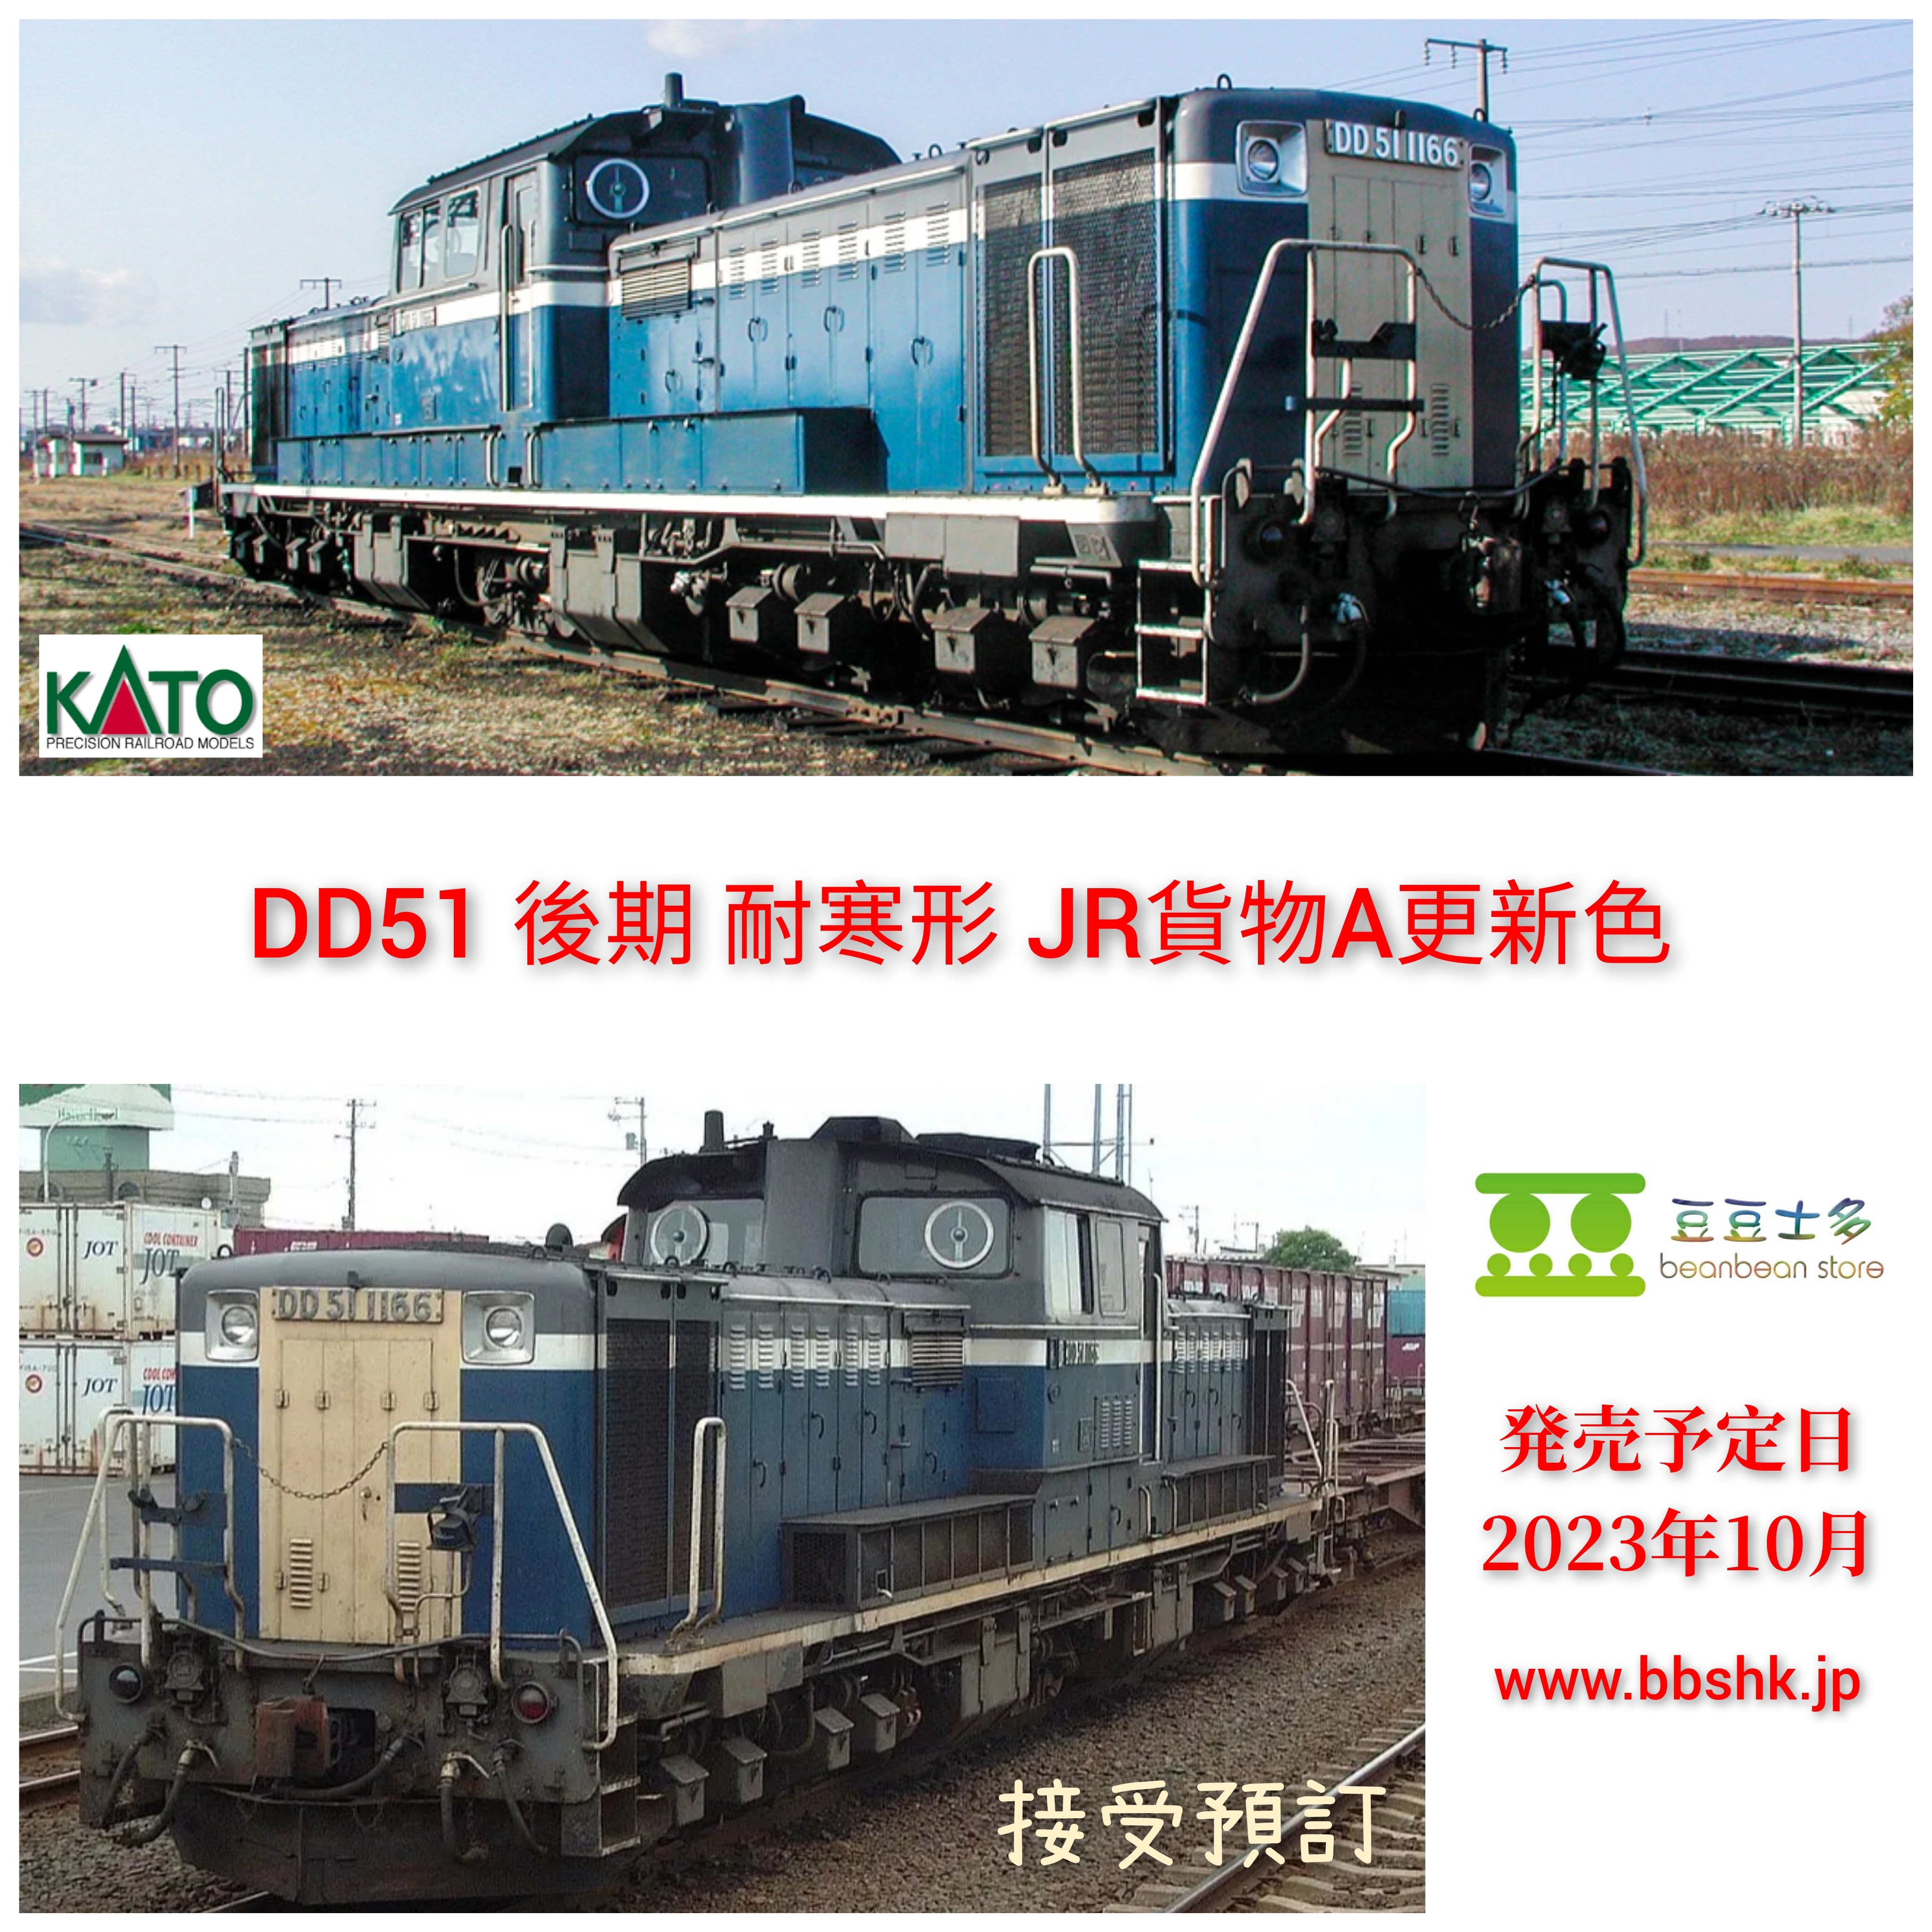 何でも揃う ［鉄道模型］カトー (Nゲージ) 7008-J DD51 後期 耐寒形 JR貨物A更新色